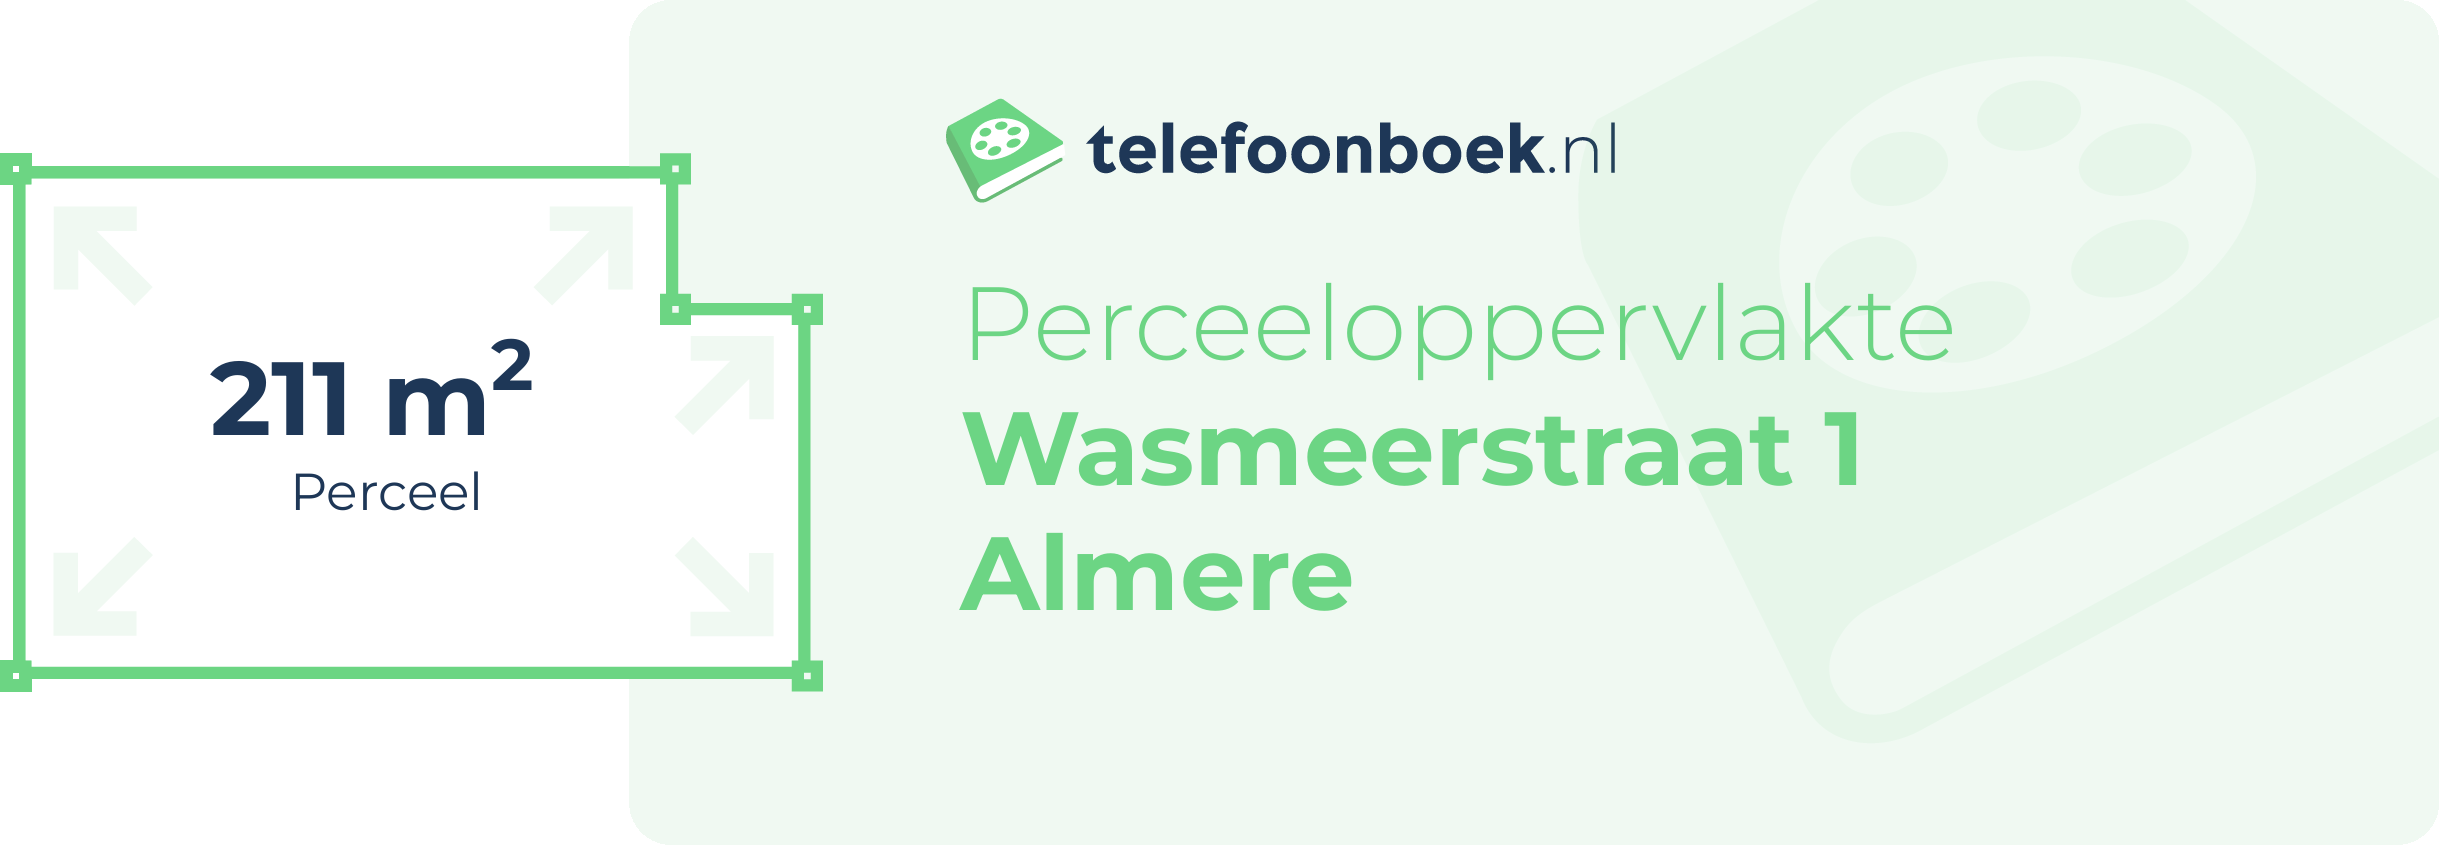 Perceeloppervlakte Wasmeerstraat 1 Almere